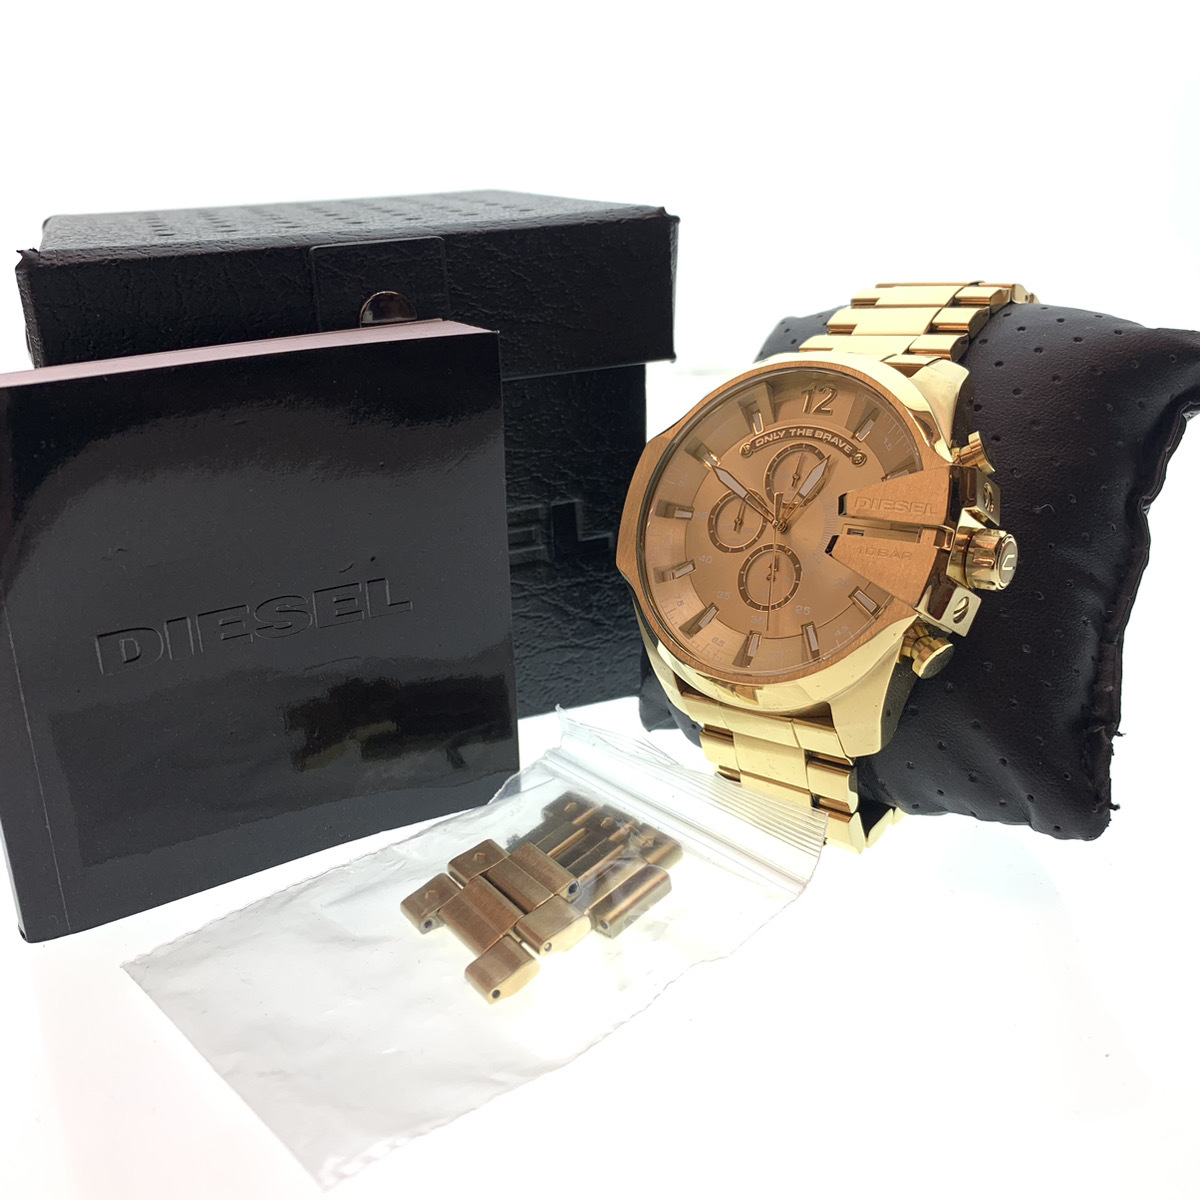 ●DIESEL ディーゼル 腕時計 ウォッチ MEGA CHIEF メガチーフ CHRONOGRAPH クロノグラフ オールゴールド 金色 DZ4360 104